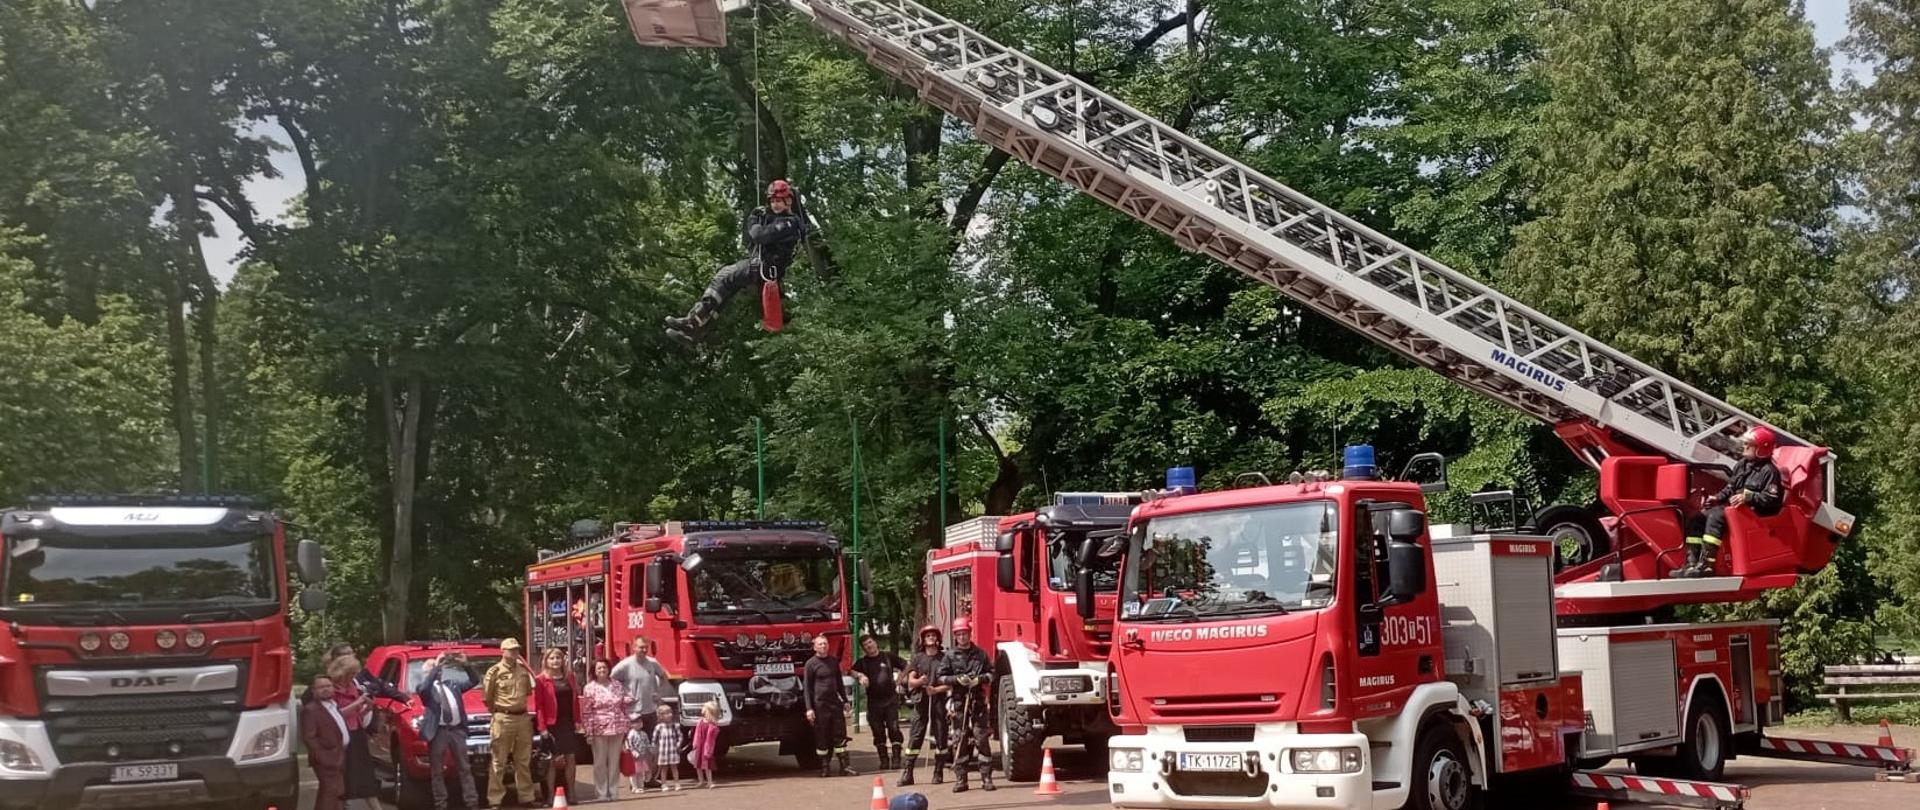 Na zdjęciu widać drabinę mechaniczna rozłożoną, na której podwieszony jest ratownik pozorujący osobę poszkodowaną. Za nią stoją obserwatorzy pokazu oraz cztery samochody pożarnicze. 